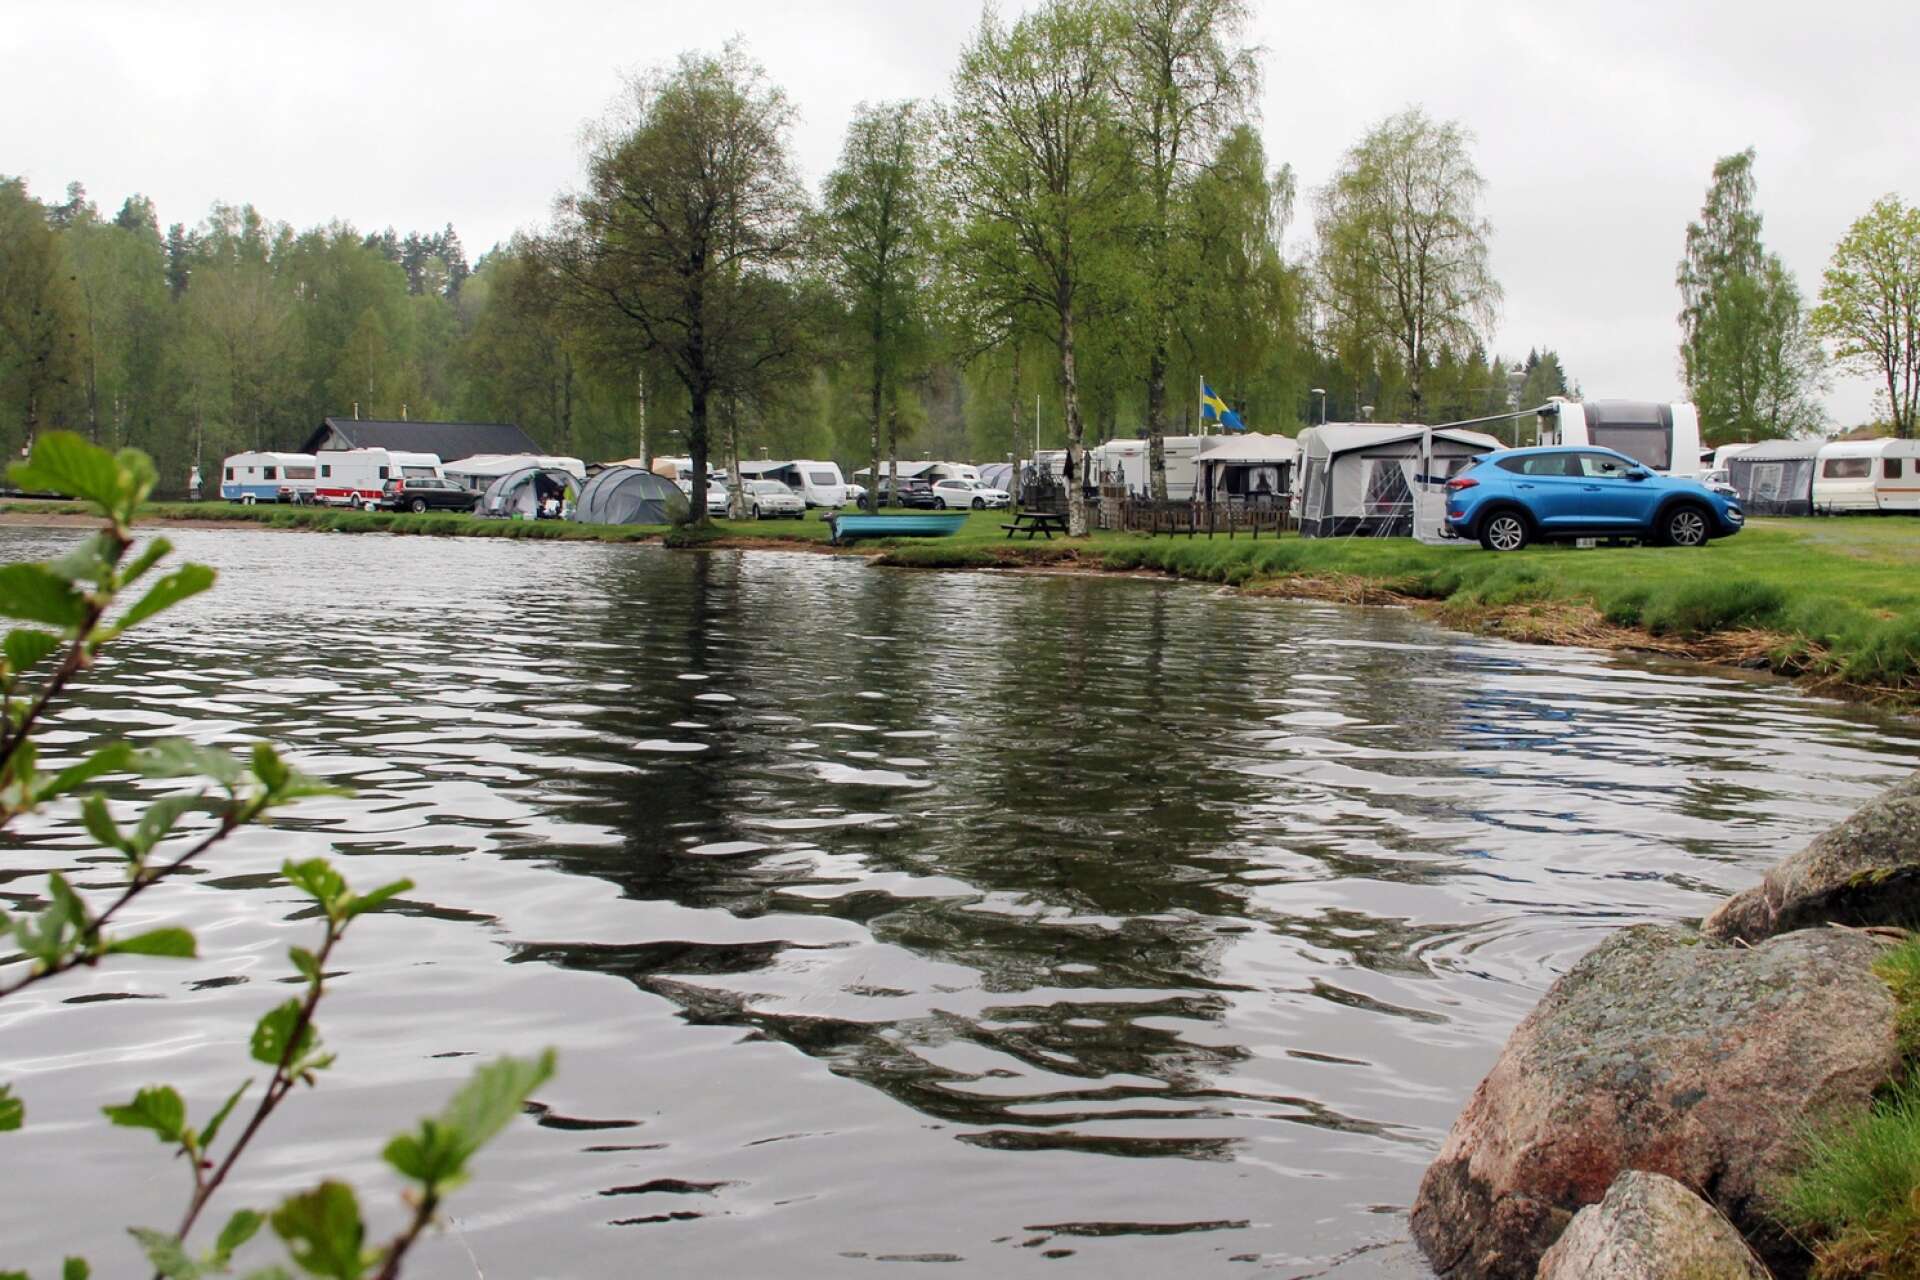 Den tredje generatinoen tar över verksamheten Ragneruds camping och stygby.
Marielle Örtengren och Linus Bergström är nya ägare.